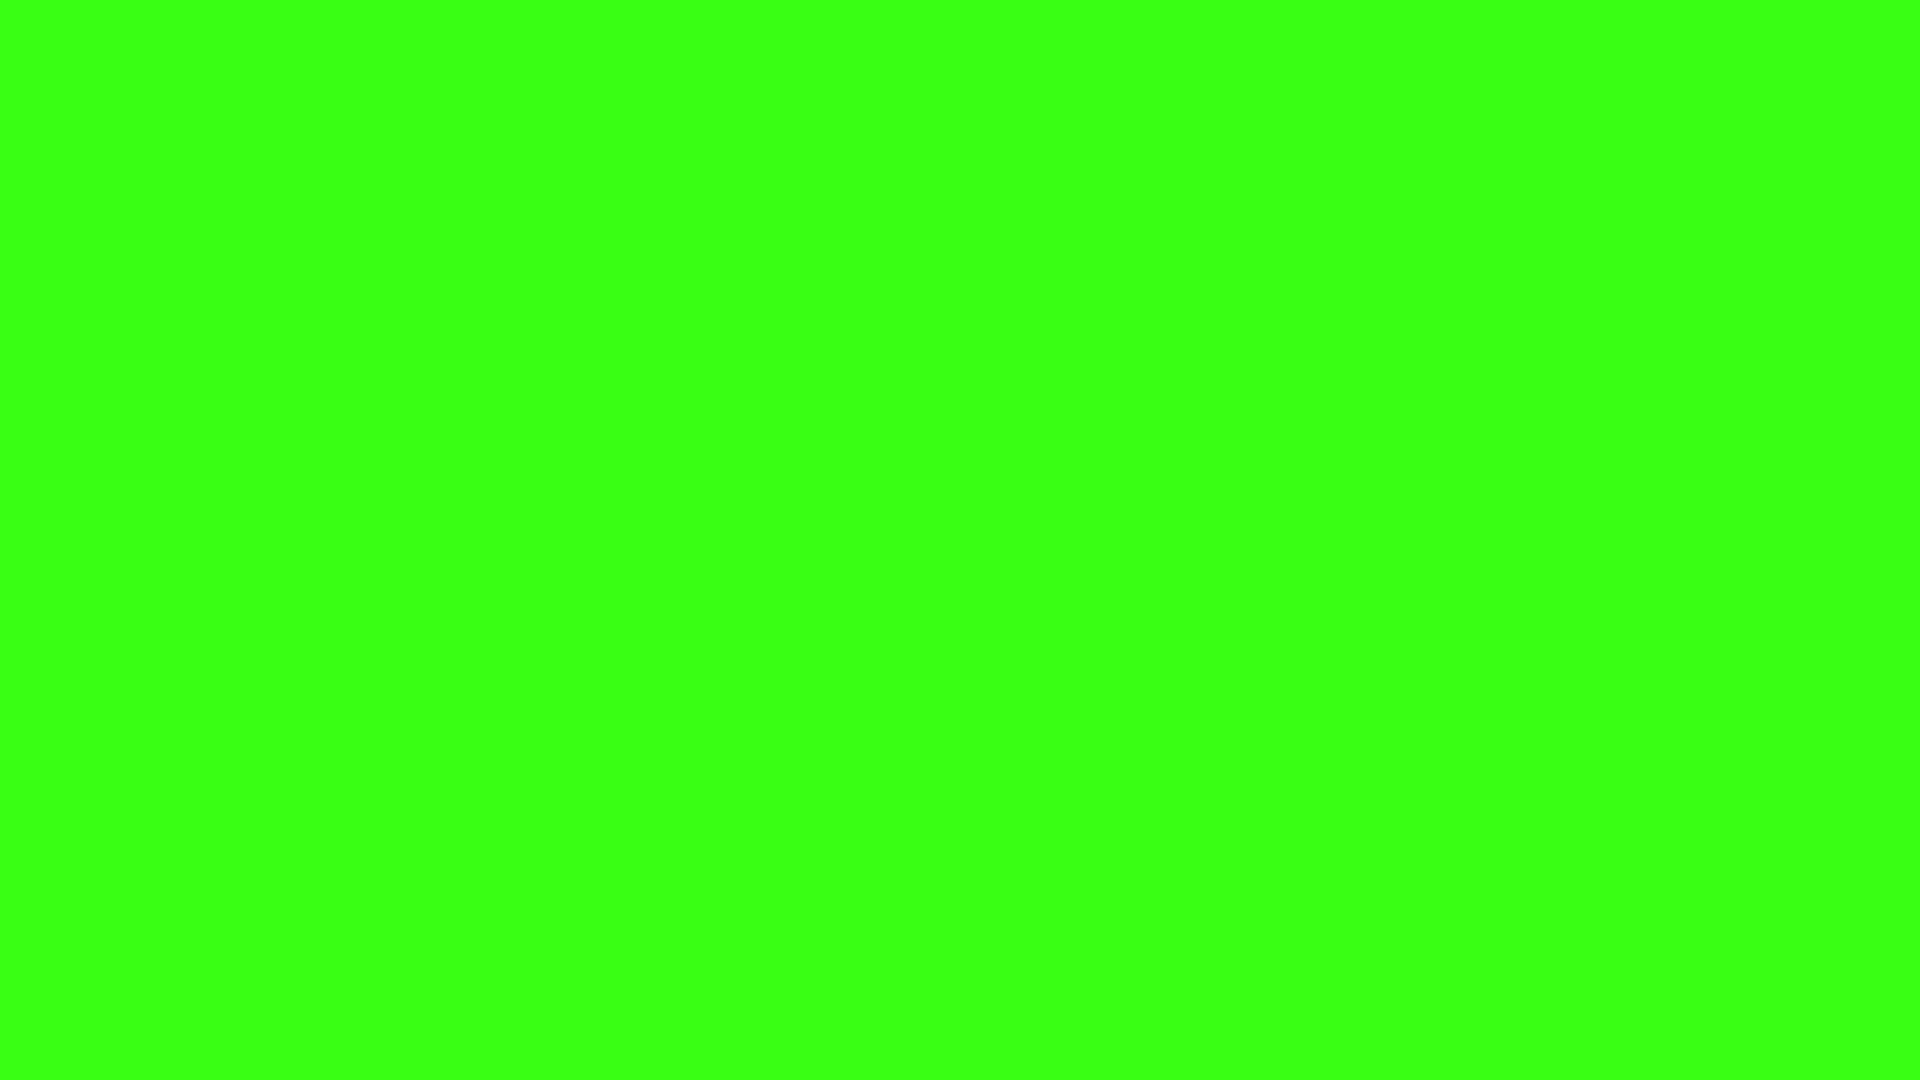 Nền đen Neon Green: Cảm nhận sự sôi động và năng động của màu Neon Green trên nền đen tối. Xem những thiết kế táo bạo và độc đáo trên nền tối để tạo nên một không gian đầy cá tính.